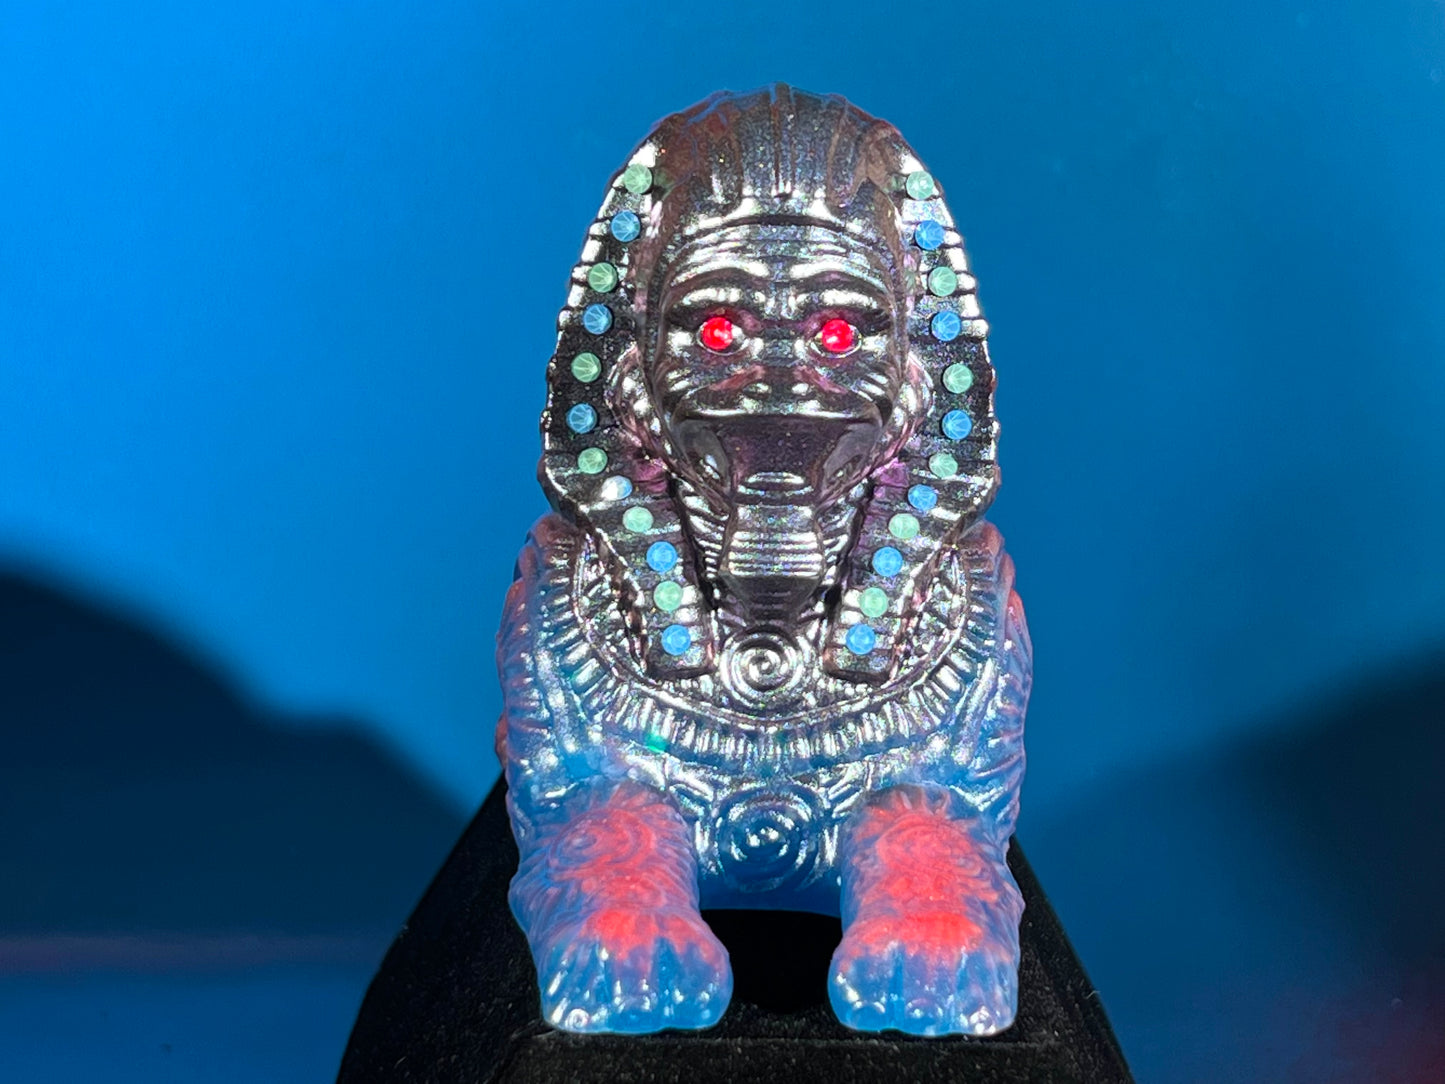 Sphinx Ape 2.0: Desert Glow Factory